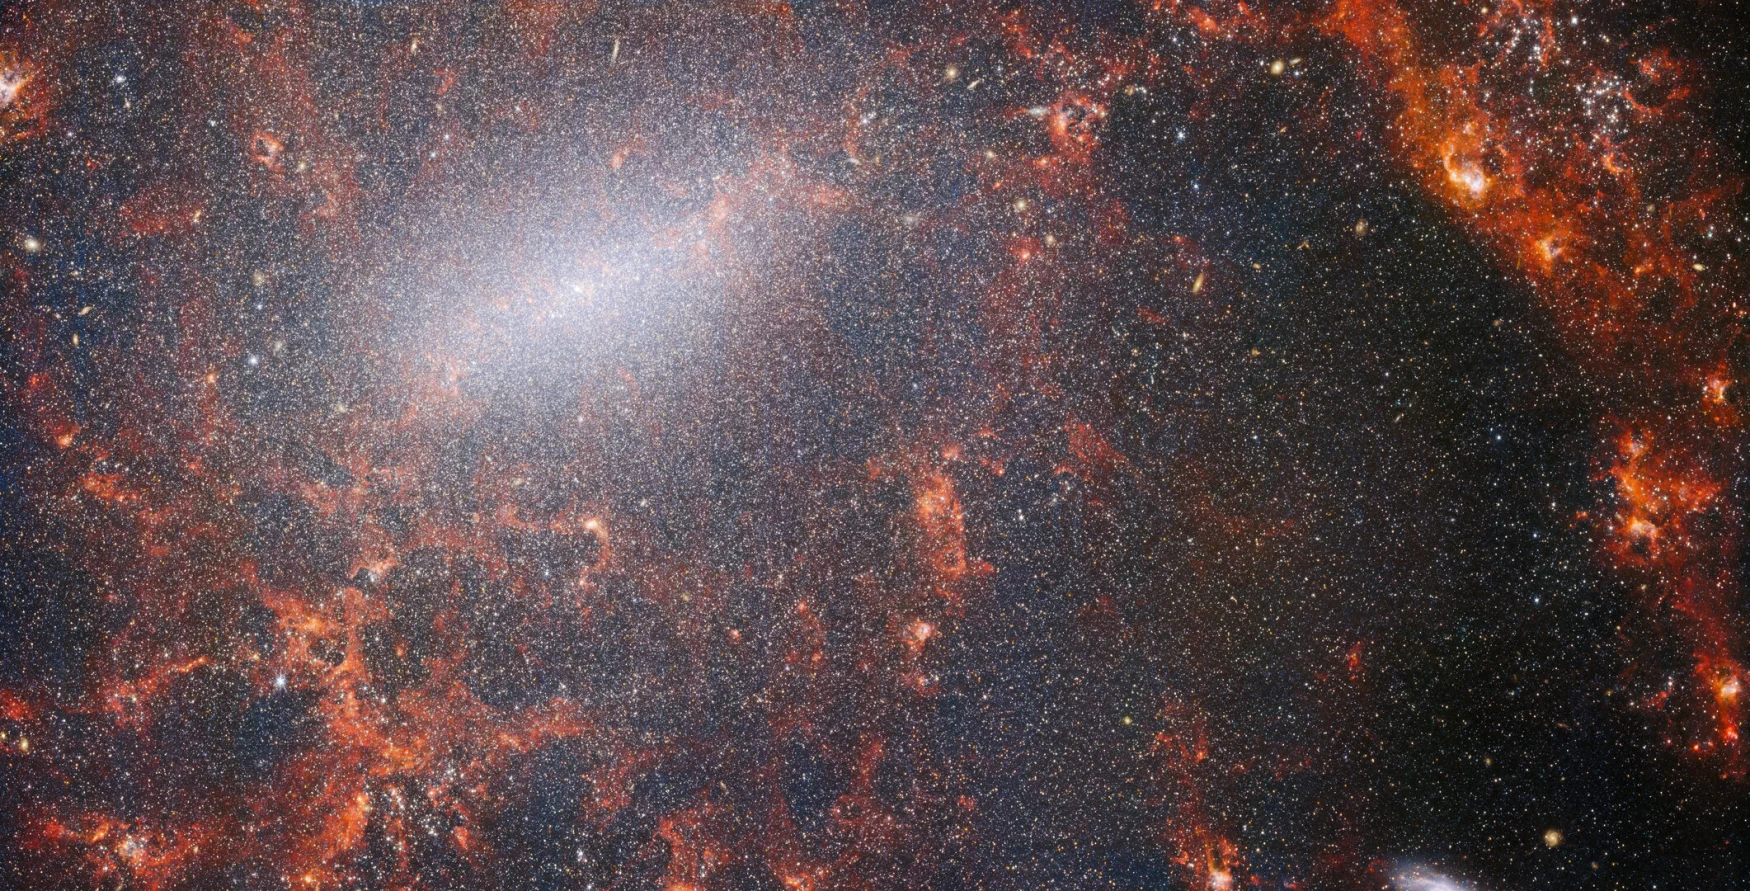 Фина влакна прашине и сјајна звездана јата виде се преко ове слике са НАСА/ЕСА/ЦСА свемирског телескопа Џејмс Веб.  Овај поглед са Вебовог НИРЦам инструмента прошаран је масивним јатом звезда галаксије, најгушће збијеним дуж њене светле централне траке, заједно са пламтећим црвеним облацима гаса осветљеним младим звездама унутар њега.  Ове светлуцаве звезде припадају спиралној галаксији НГЦ 5068, која се налази око 17 милиона светлосних година од Земље у сазвежђу Девица.  Ова слика НГЦ 5068 је део кампање за стварање астрономског блага, складишта за посматрање формирања звезда у оближњим галаксијама.  Претходне драгуље из ове колекције можете видети овде и овде.  Ова запажања су посебно драгоцена за астрономе из два разлога.  Први је да формирање звезда подупире многе области у астрономији, од физике слабе међузвездане плазме до еволуције читавих галаксија.  Посматрајући формирање звезда у оближњим галаксијама, астрономи се надају да ће започети велики научни напредак са неким од првих података доступних од Веба.  Други разлог је што су Вебова запажања заснована на другим студијама које користе телескопе, укључујући НАСА/ЕСА свемирски телескоп Хабл и неке од најспособнијих земаљских опсерваторија на свету.  Веб је сакупио слике 19 оближњих галаксија које формирају звезде, које су астрономи тада могли да комбинују са Хабловим каталозима од 10.000 звезданих јата, спектрално мапирао 20.000 емисионих маглина звезда из Веома великог телескопа (ВЛТ) и посматрао 12.000 маглина из тамних.  , густи молекуларни облаци идентификовани помоћу Атацама великог милиметарског/субмилиметарског низа (АЛМА).  Ова запажања обухватају електромагнетни спектар и дају астрономима прилику без преседана да саставе детаље формирања звезда.  Ова скоро инфрацрвена слика галаксије испуњена је масивним јатом древних звезда које чине језгро НГЦ 5068. Оштар поглед НИРЦам-а омогућава астрономима да провирују кроз гас и прашину галаксије како би пажљивије испитали њене звезде.  Дуж путање спиралних кракова су густи, светли облаци прашине: ово су Х ИИ региони, кластери гаса водоника где се формирају нове звезде.  Активне, енергичне звезде јонизују водоник око себе, који у комбинацији са емисијом вреле прашине производи овај црвенкасти сјај.  Х ИИ региони су одлична мета за астрономе, а Вебови инструменти су савршени алати за њихово испитивање, што је резултирало овом сликом. [Image Description: A close-in image of a spiral galaxy, showing its core and part of a spiral arm. At this distance thousands upon thousands of tiny stars that make up the galaxy can be seen. The stars are most dense in a whitish bar that forms the core, and less dense out from that towards the arm. Bright red gas clouds follow the twist of the galaxy and the spiral arm.] Везе НГЦ 5068 (НИРЦам + МИРИ слика) 